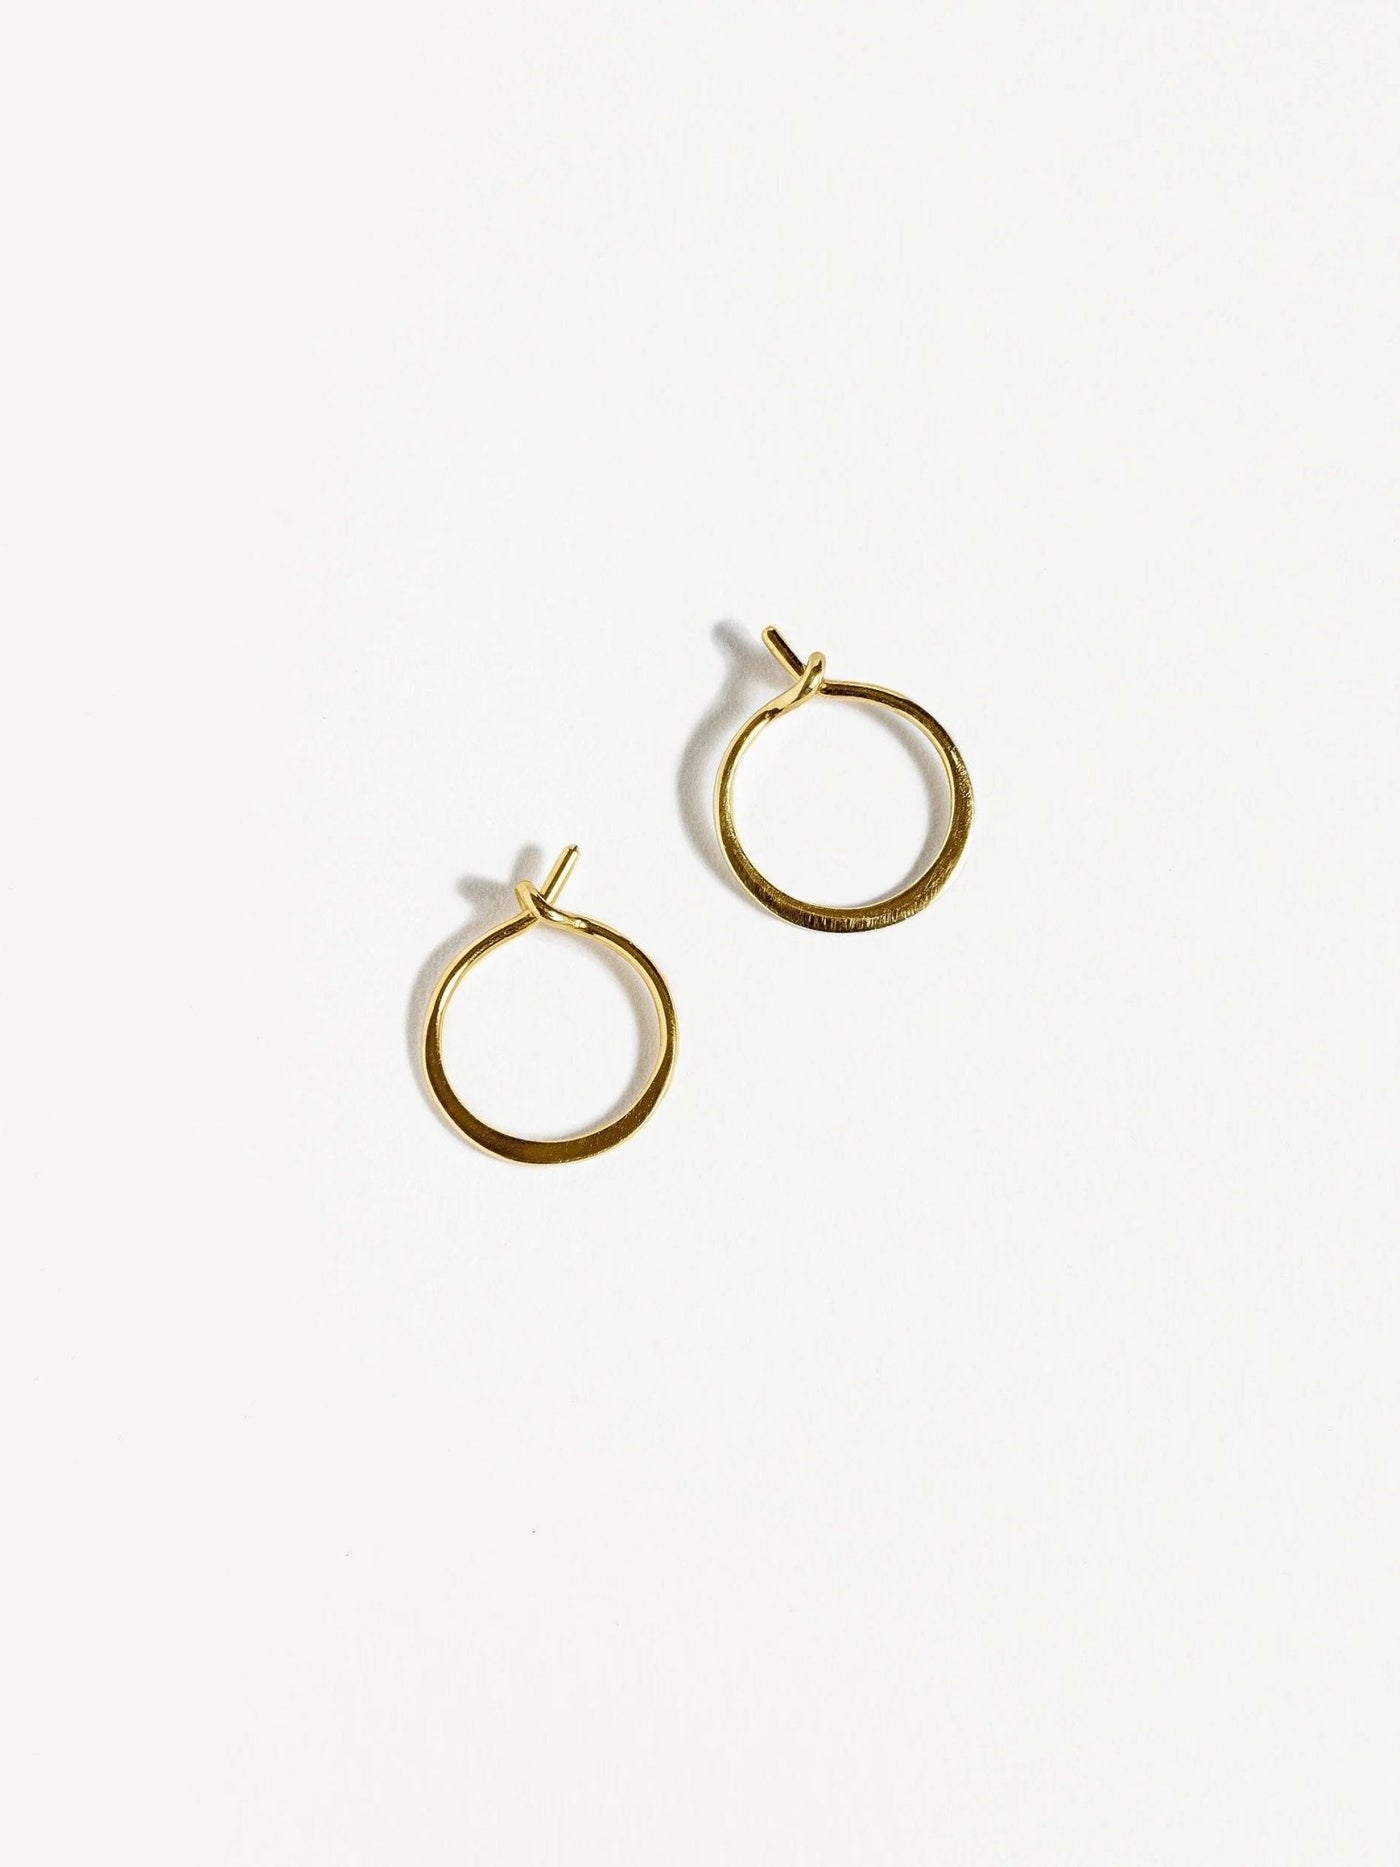 Mia Gold Hoop Earrings - Yellow Gold Filled714K Gold EarringsBackUpItemsLunai Jewelry